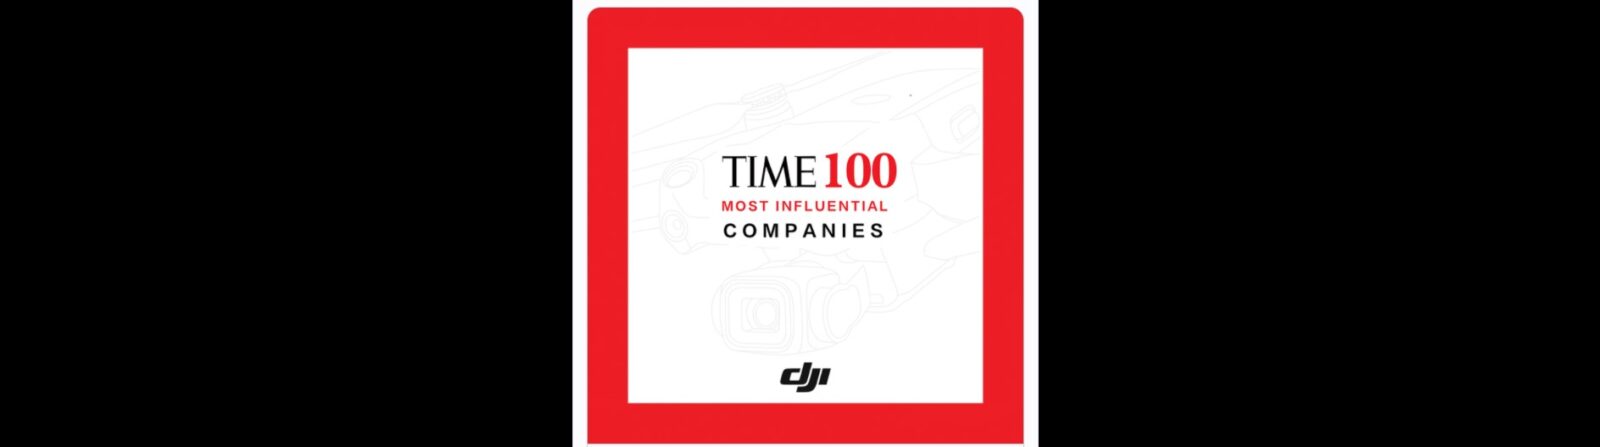 DJI вошла в список 100 самых влиятельных компаний по версии журнала Time